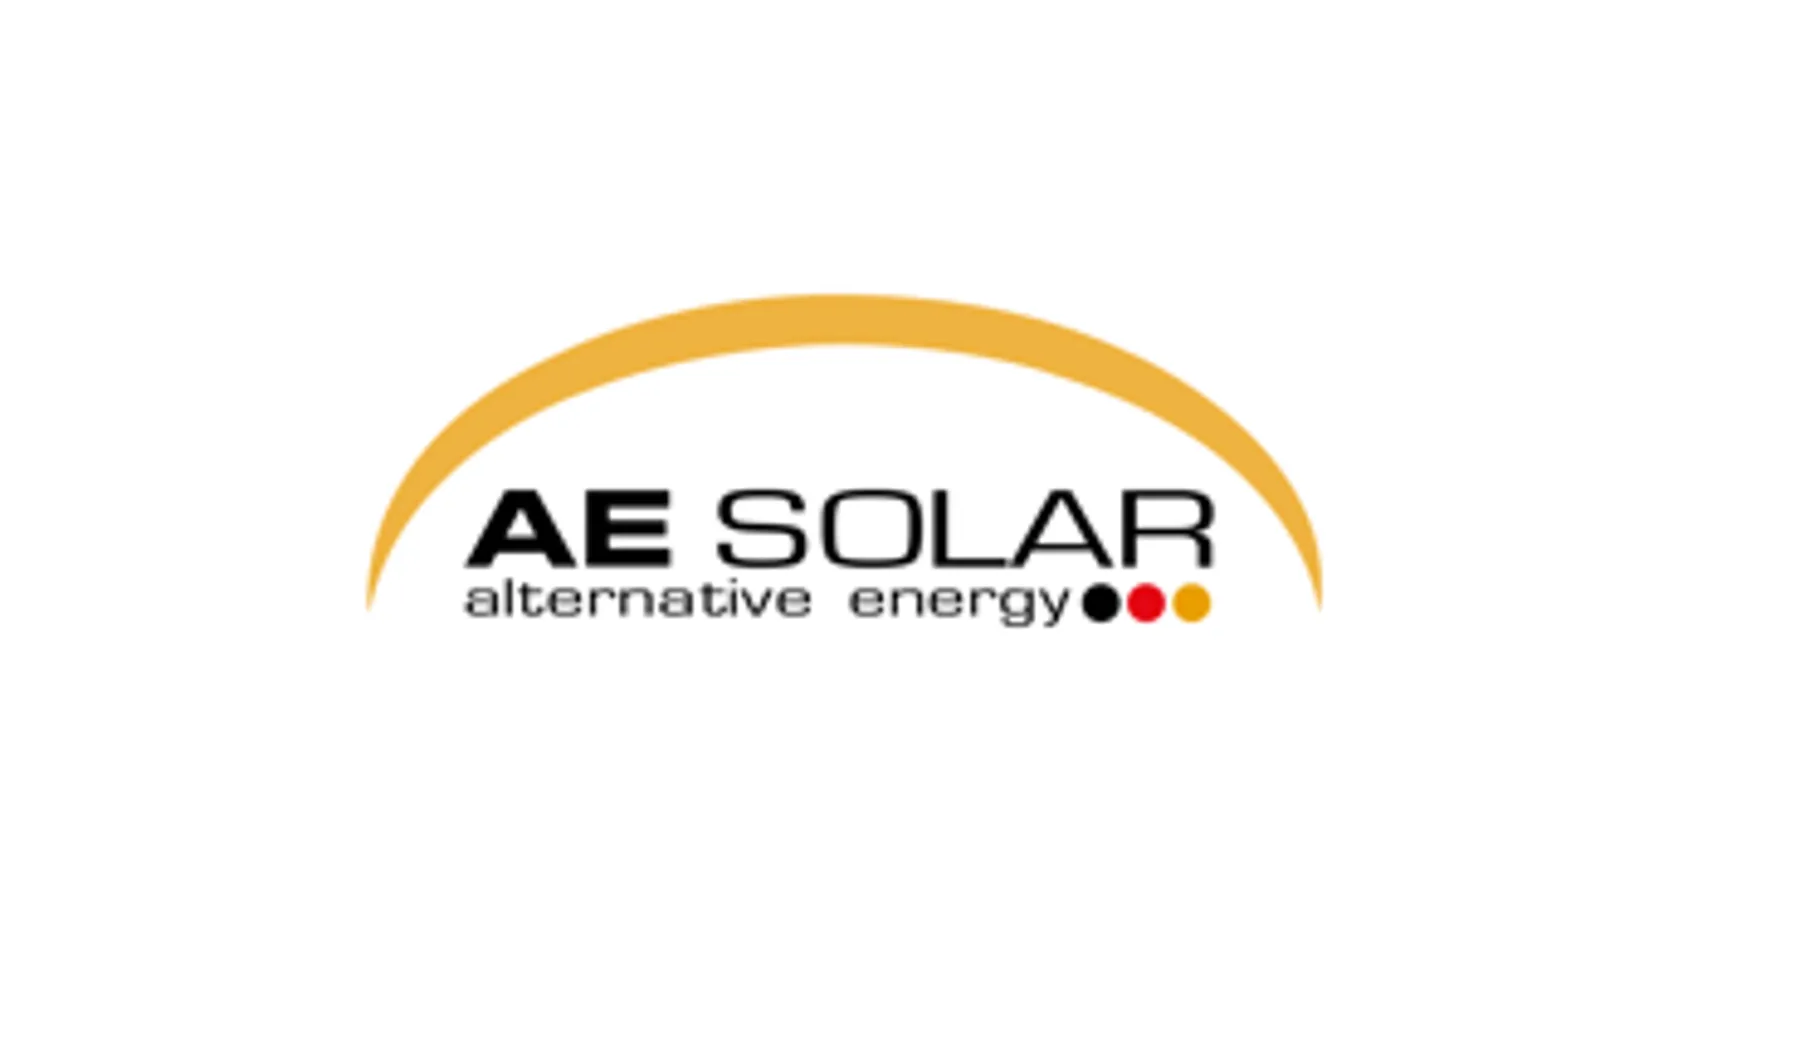 A AE Solar Tier 1 é uma das marcas líderes e premiadas do mercado de energias renováveis, oferecendo soluções em tecnologia fotovoltaica, desde 2003, e presente em mais de 95 países.